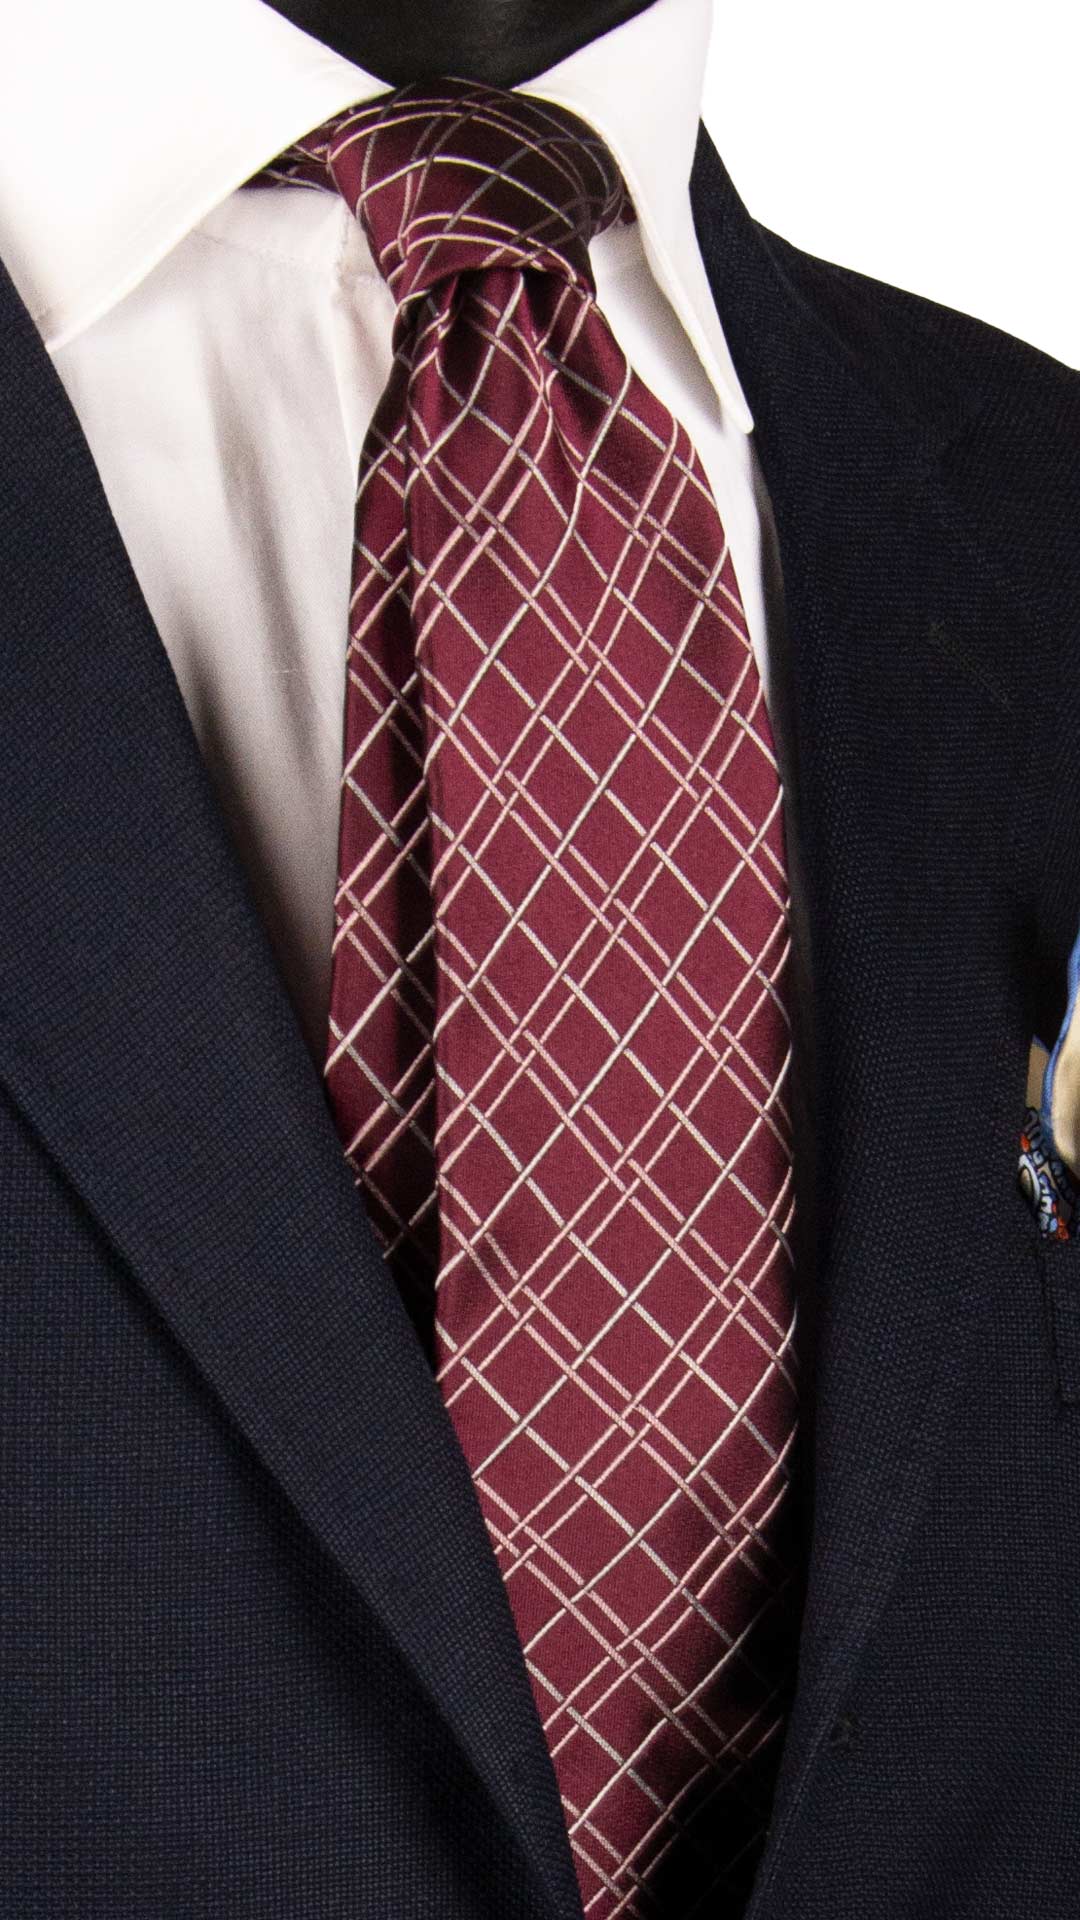 Cravatta Sette Pieghe di Seta a Quadri Bordeaux Rosa Bianco  7P462 Made in Italy Graffeo Cravatte